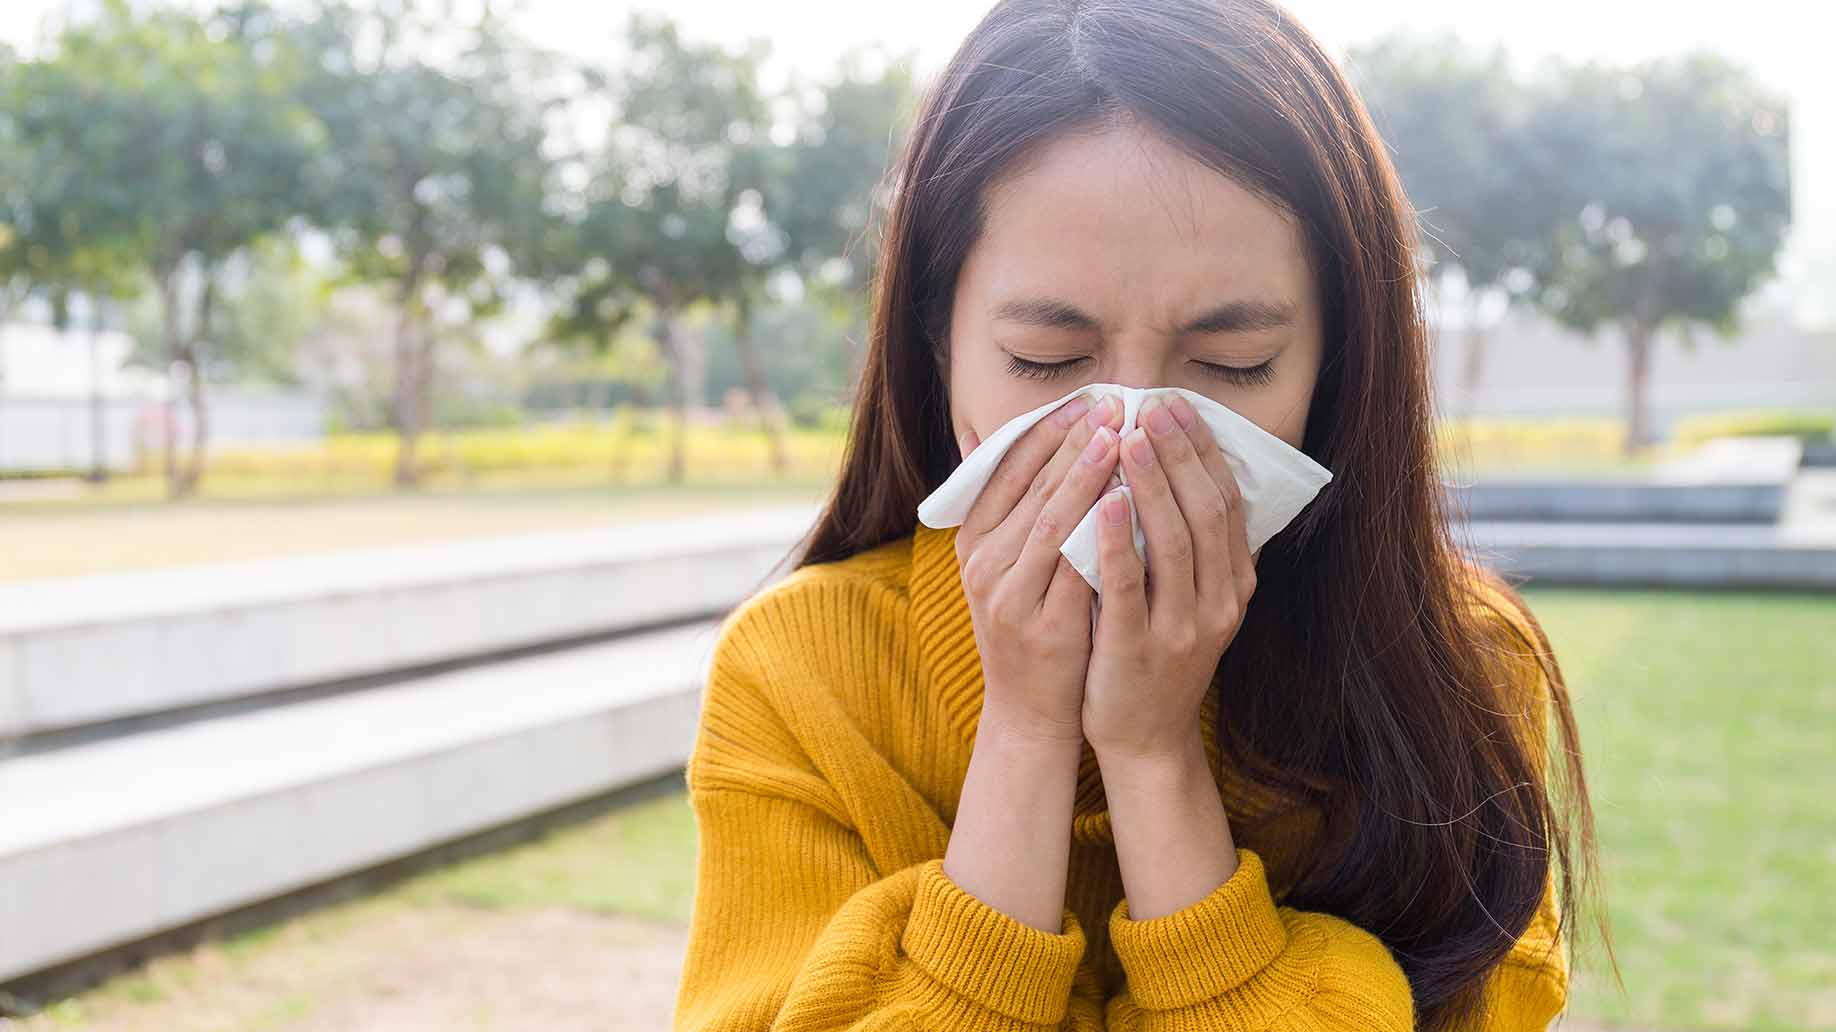 allergies food rhinitis itchy watery eyes sneezing seasonal rash wheezing natural remedies